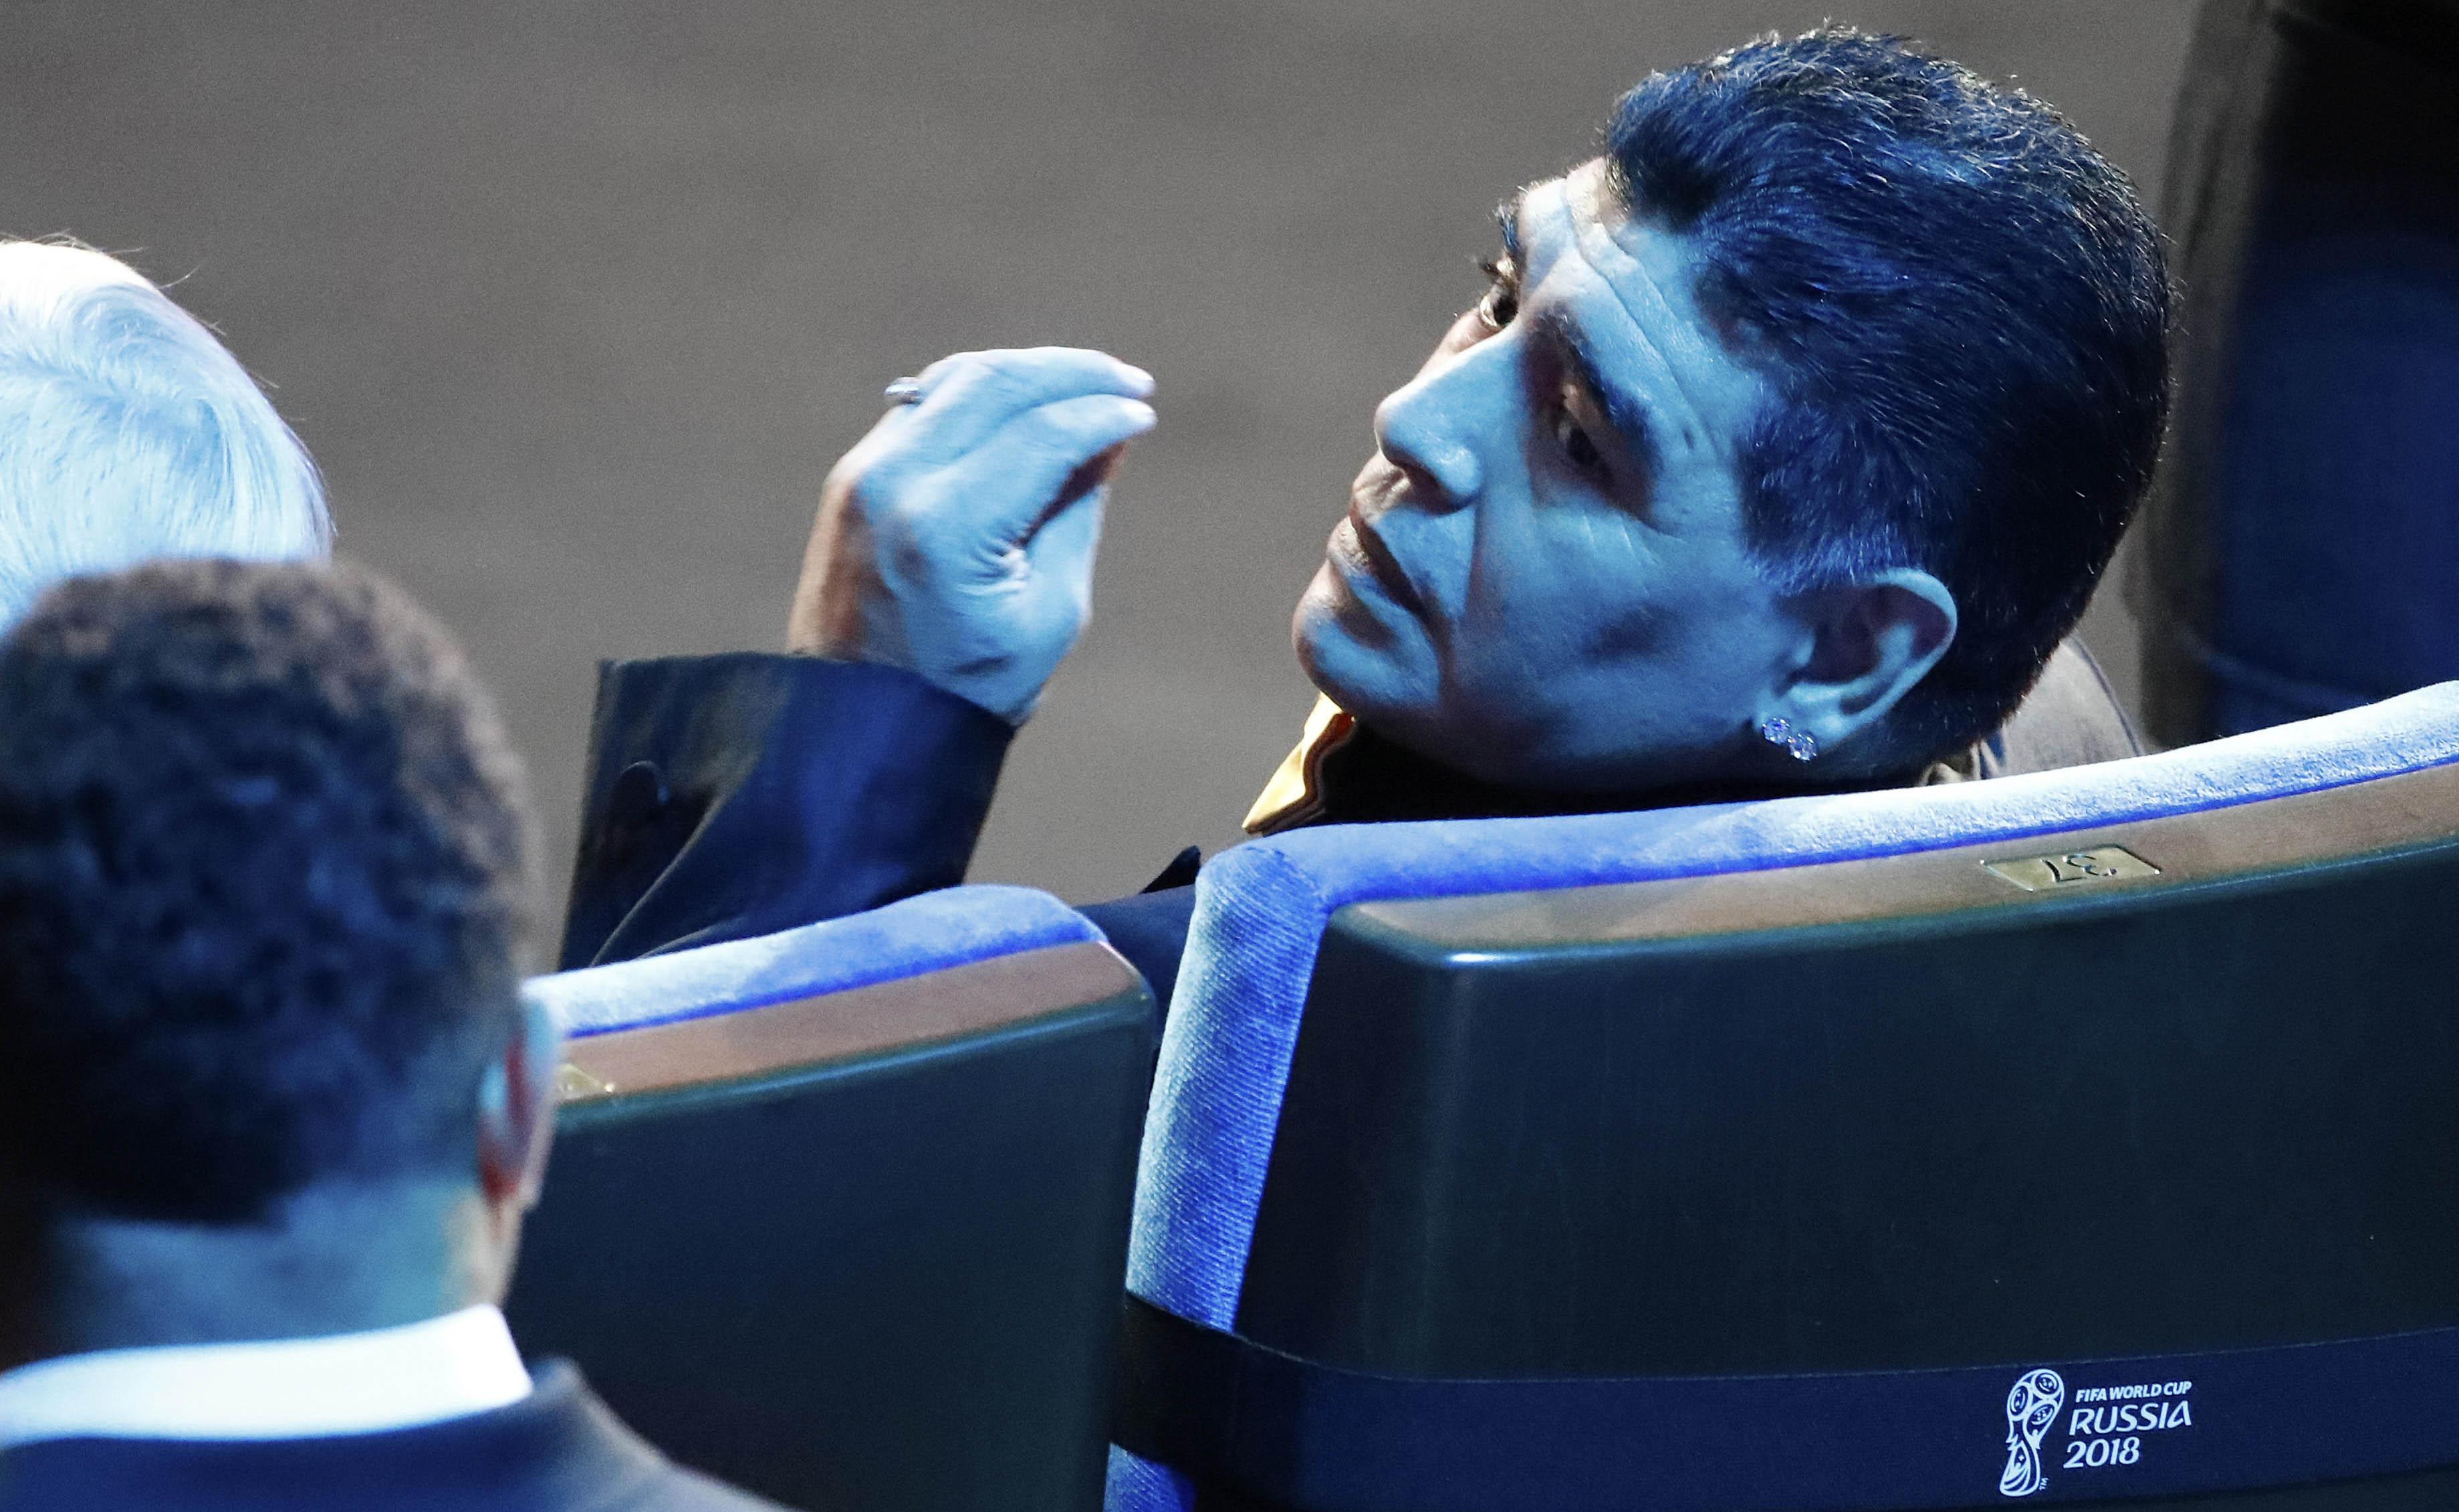 KAD NEMA MESIJA, NIKO SE NE PLAŠI ARGENTINE! Evo kako Maradona vidi šanse "gaučosa" da osvoje SP